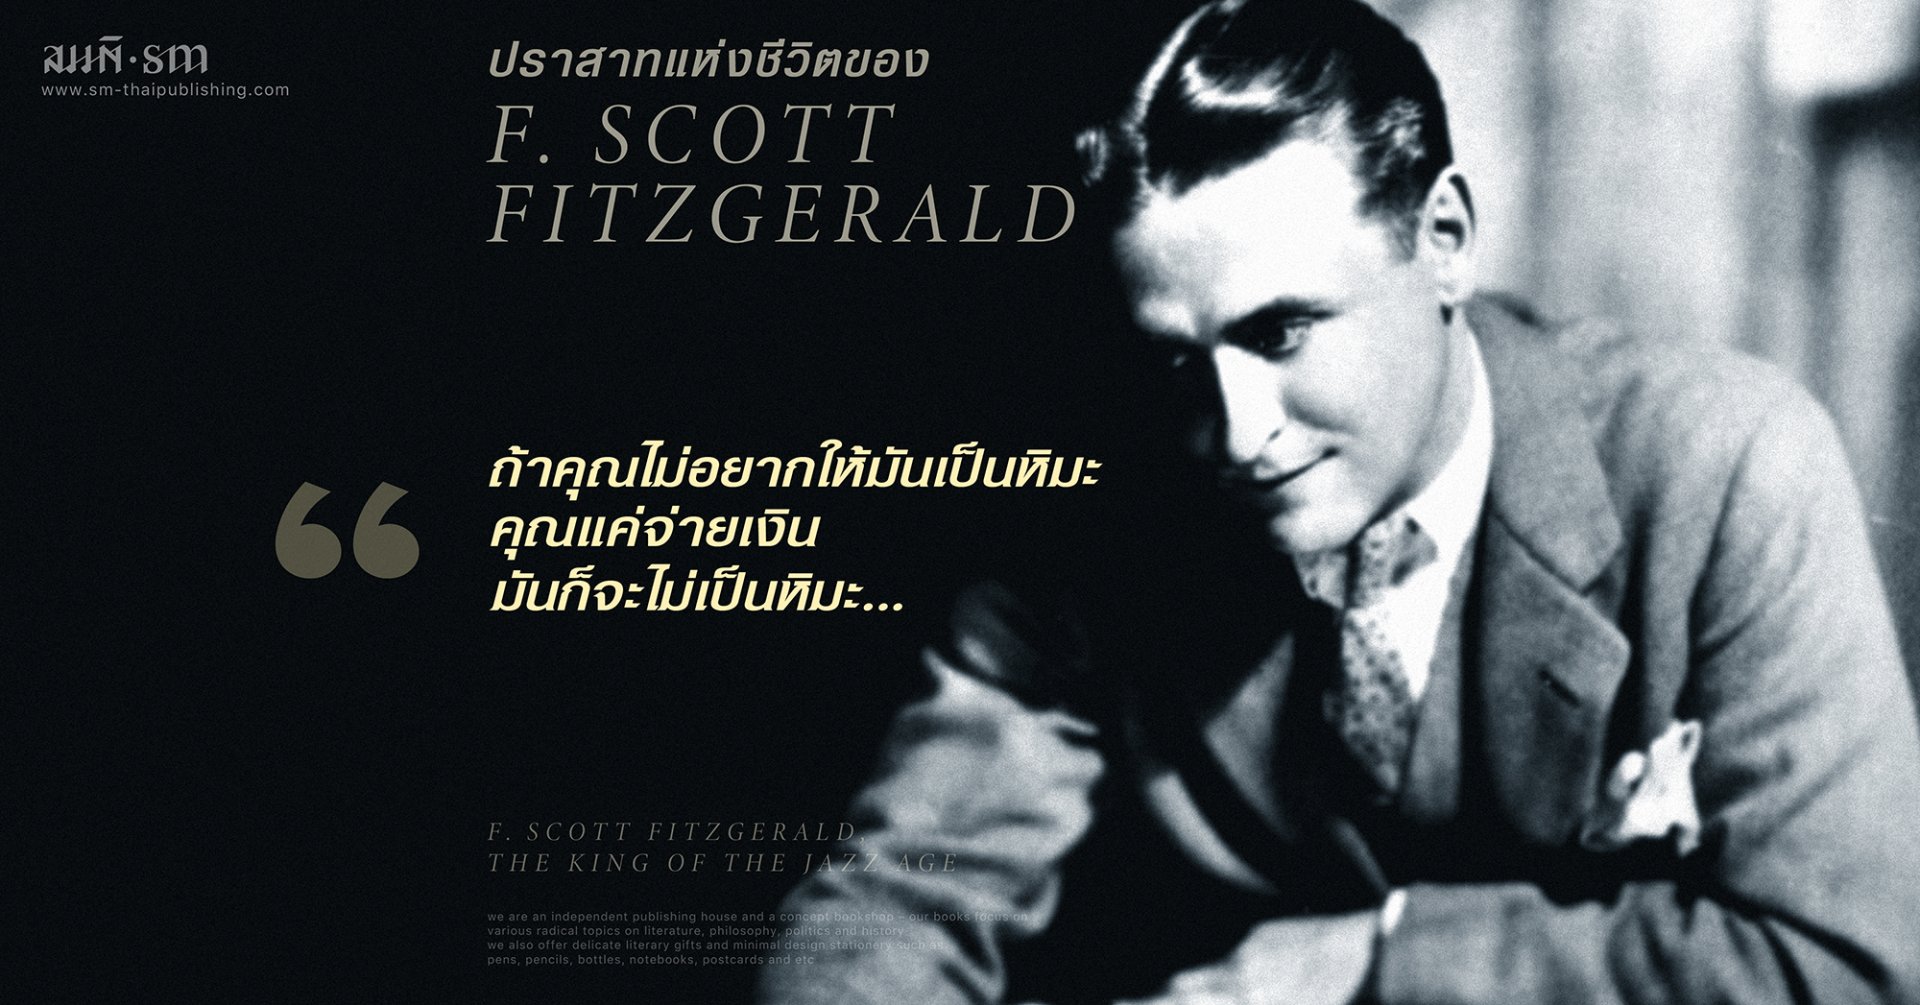 เอฟ. สก็อต ฟิตซ์เจอรัลด์ | F. Scott Fitzgerald | ปราสาทแห่งชีวิตใน “หวนคืนสู่บาบิลอนฯ”